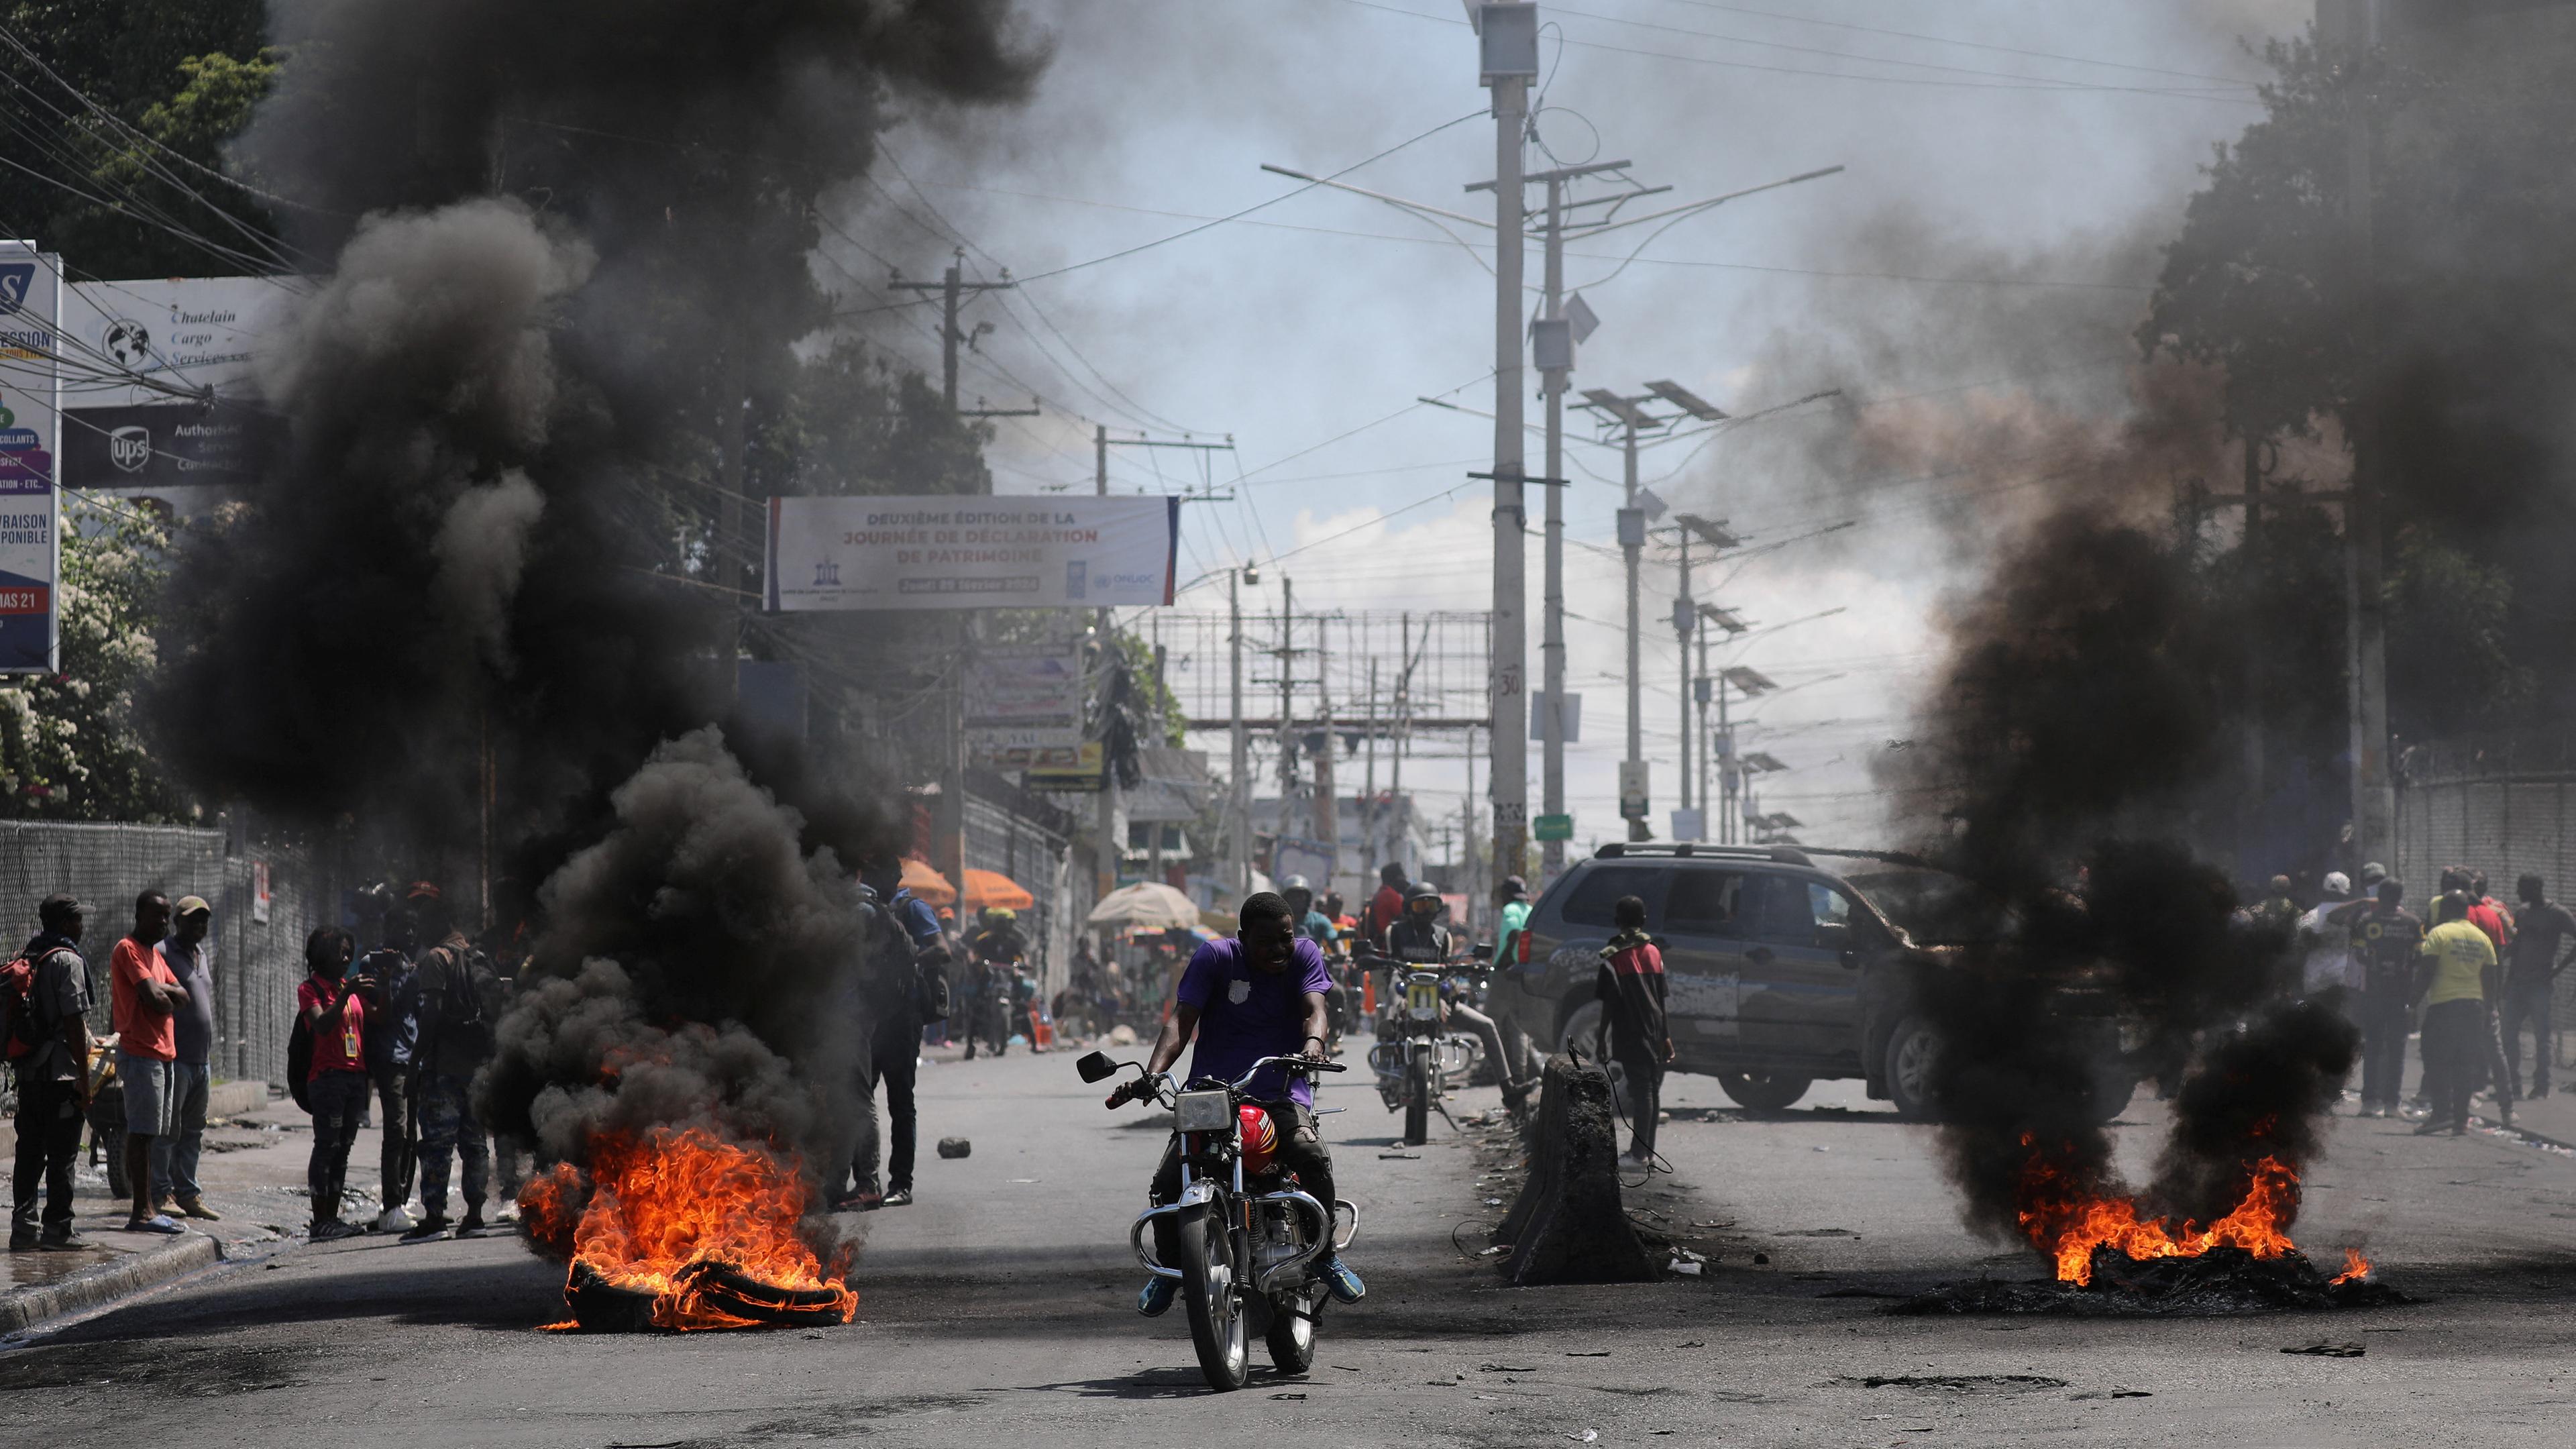 Motorradfahrer fahren während eines Protests an einer brennenden Barrikade vorbei.